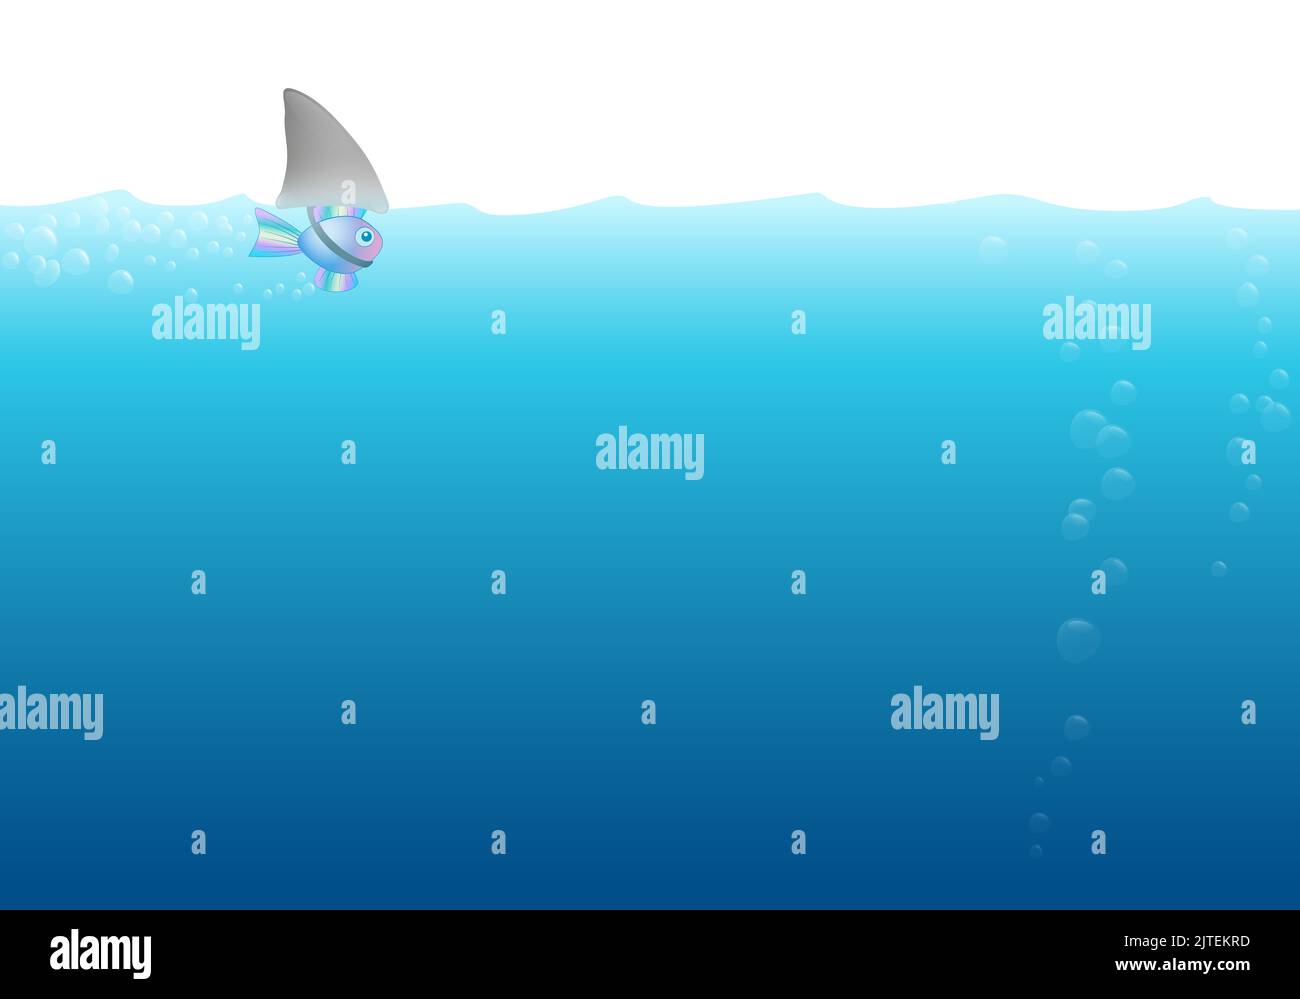 Peces pequeños con disfraces de aleta de tiburón nadando solo y ansioso en el fondo de aguas oceánicas peligrosas, con burbujas - ilustración cómica. Foto de stock